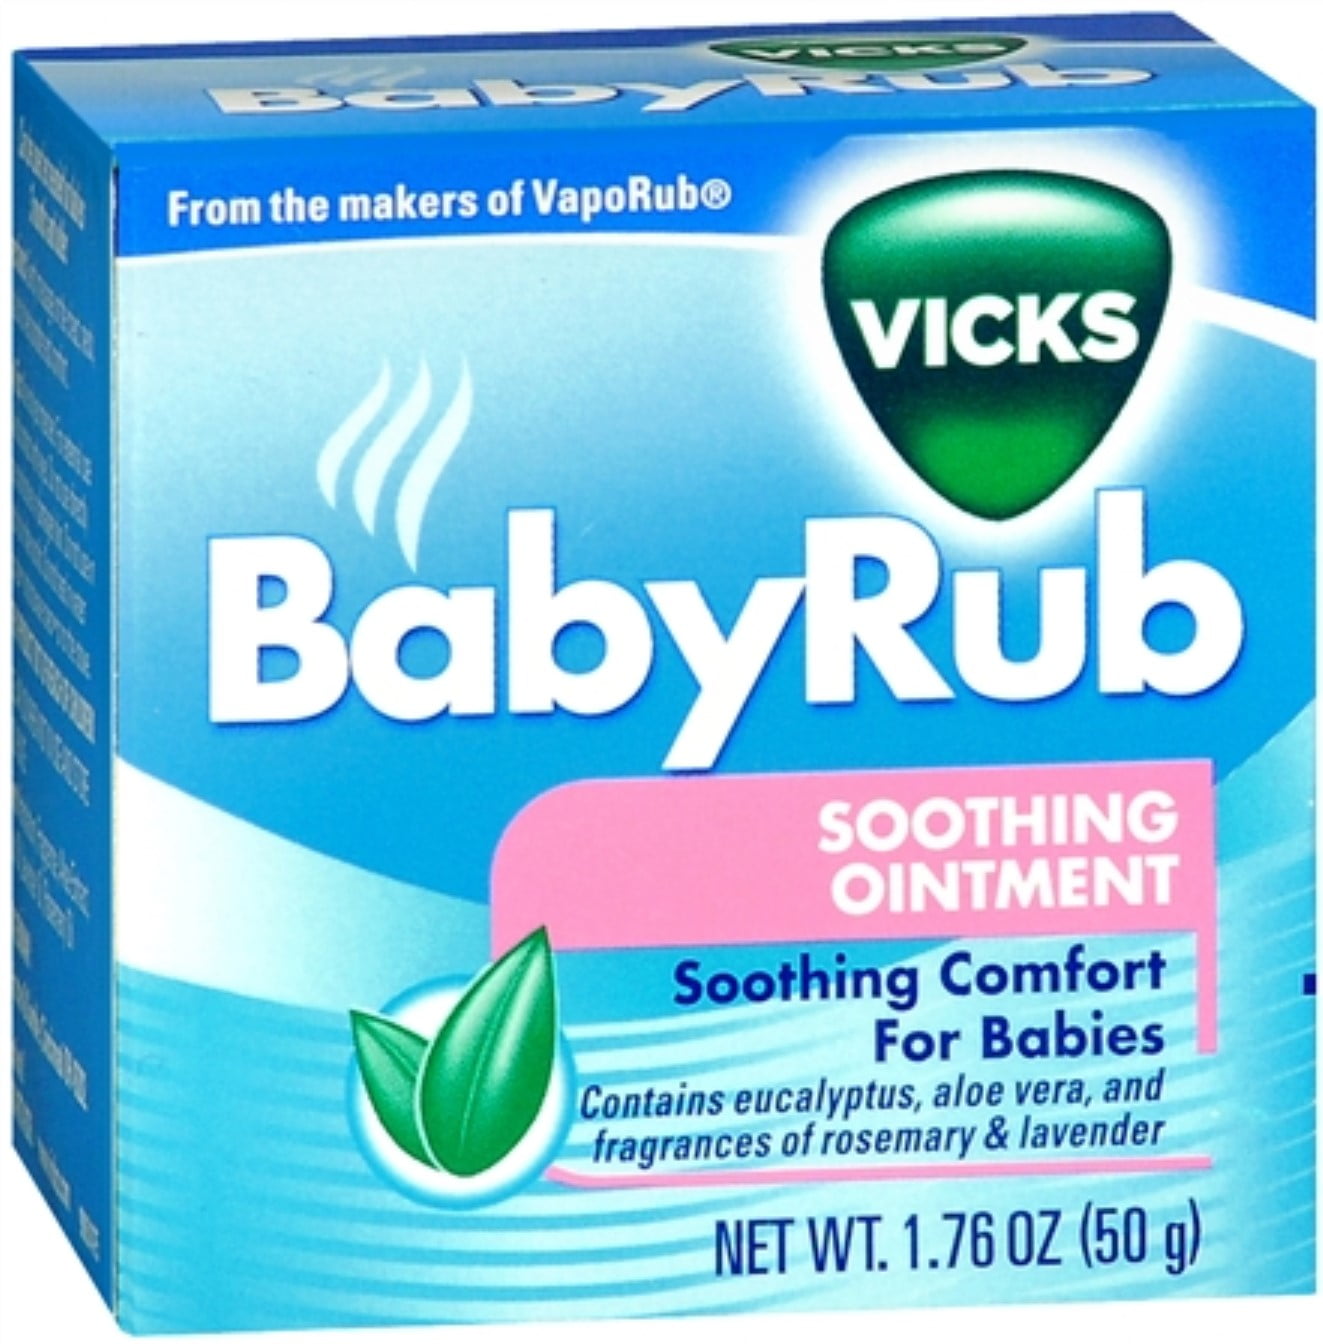 vicks vaporub for baby cold